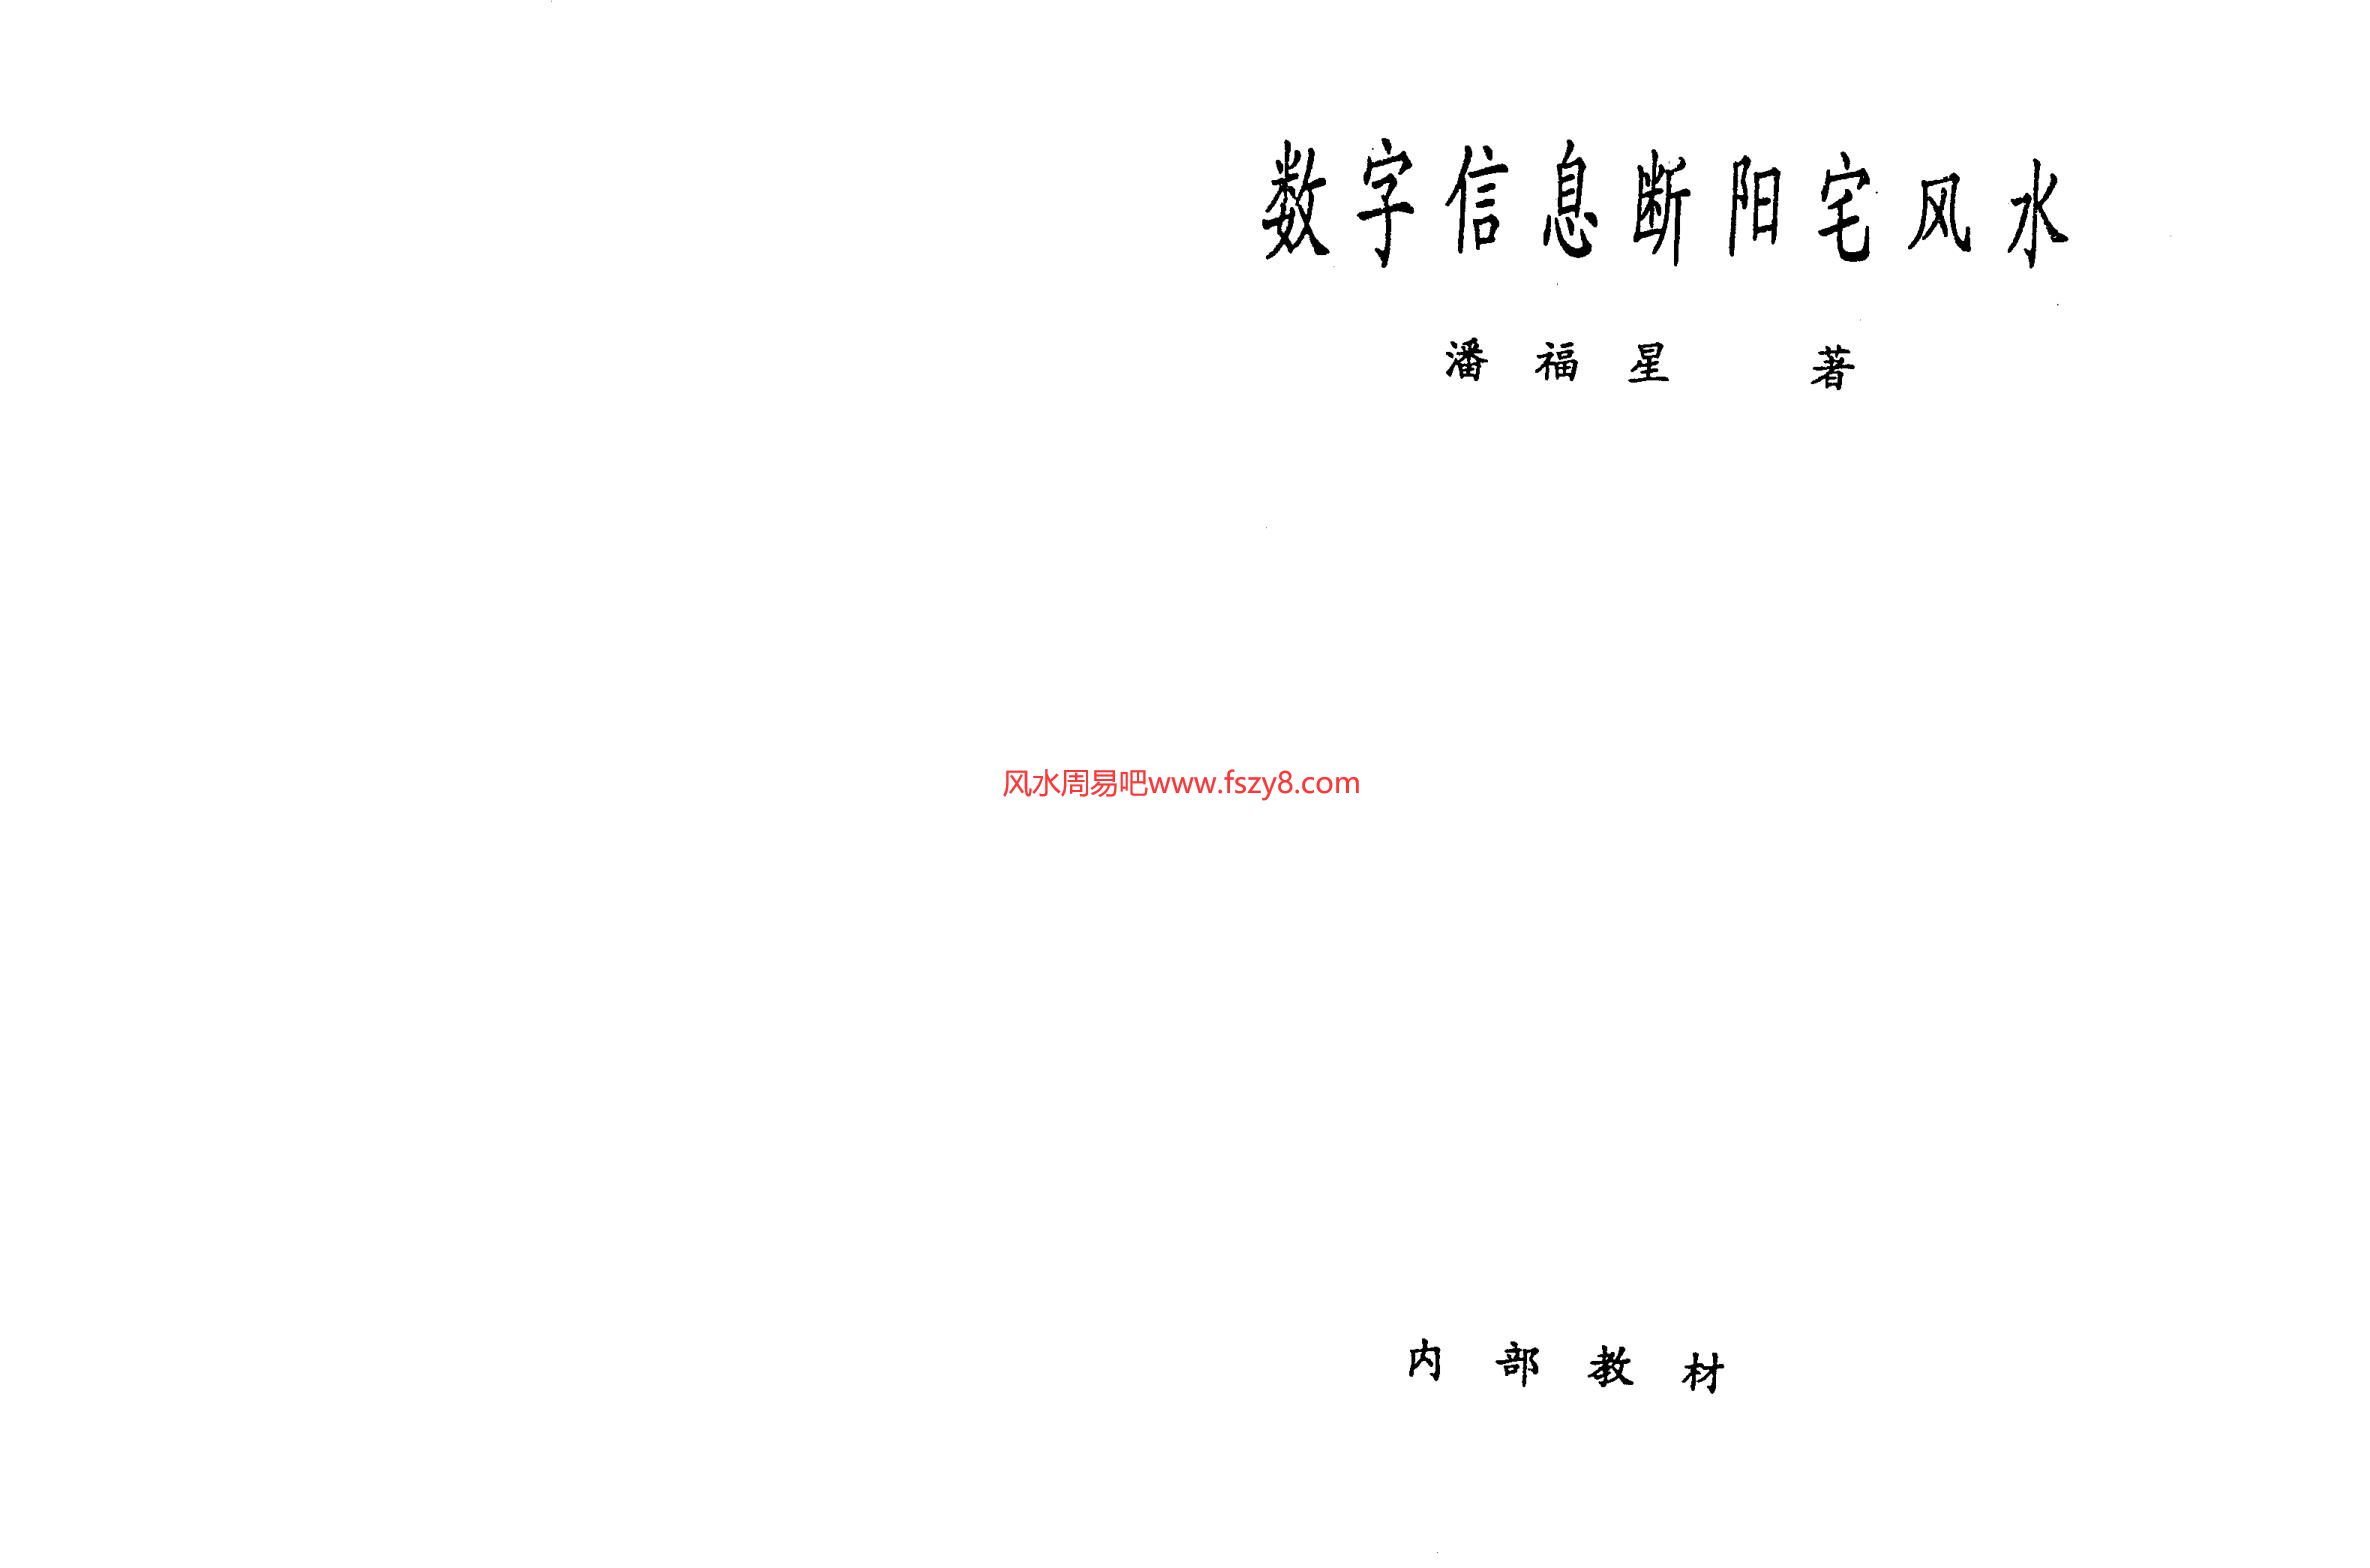 潘福星-数字信息断阳宅风水PDF电子书67页 潘福星数字信息断阳宅风水书(图1)